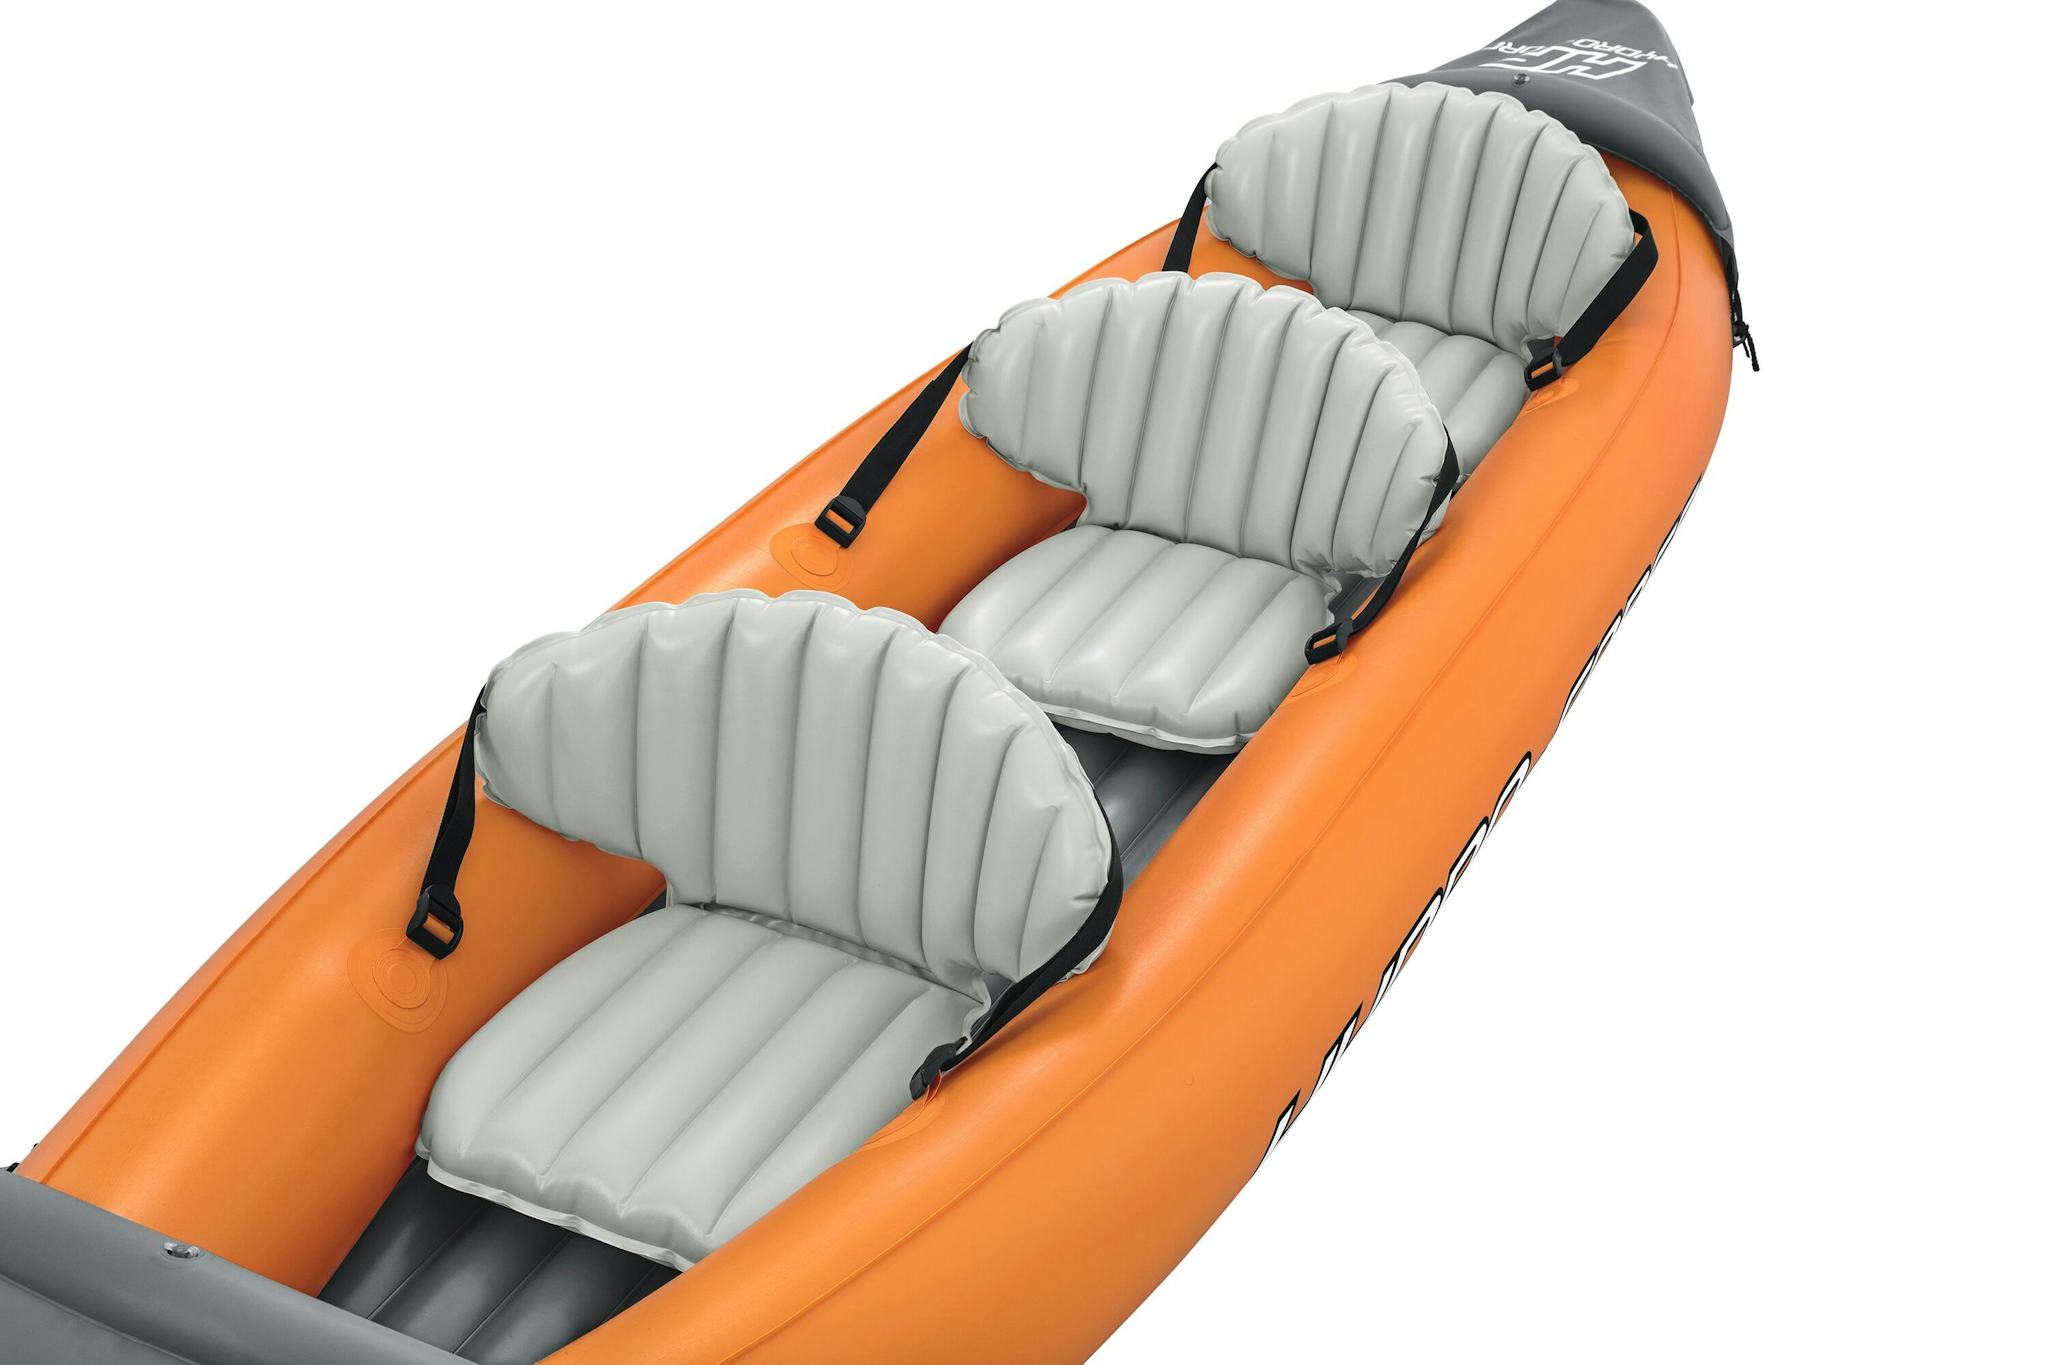 Sports d'eau Kayak gonflable Rapide X3 Hydro-Force™ 381 x 100cm, 3 places, 250 kg max, 2 pagaies, 2 ailerons amovibles et une pompe Bestway 5